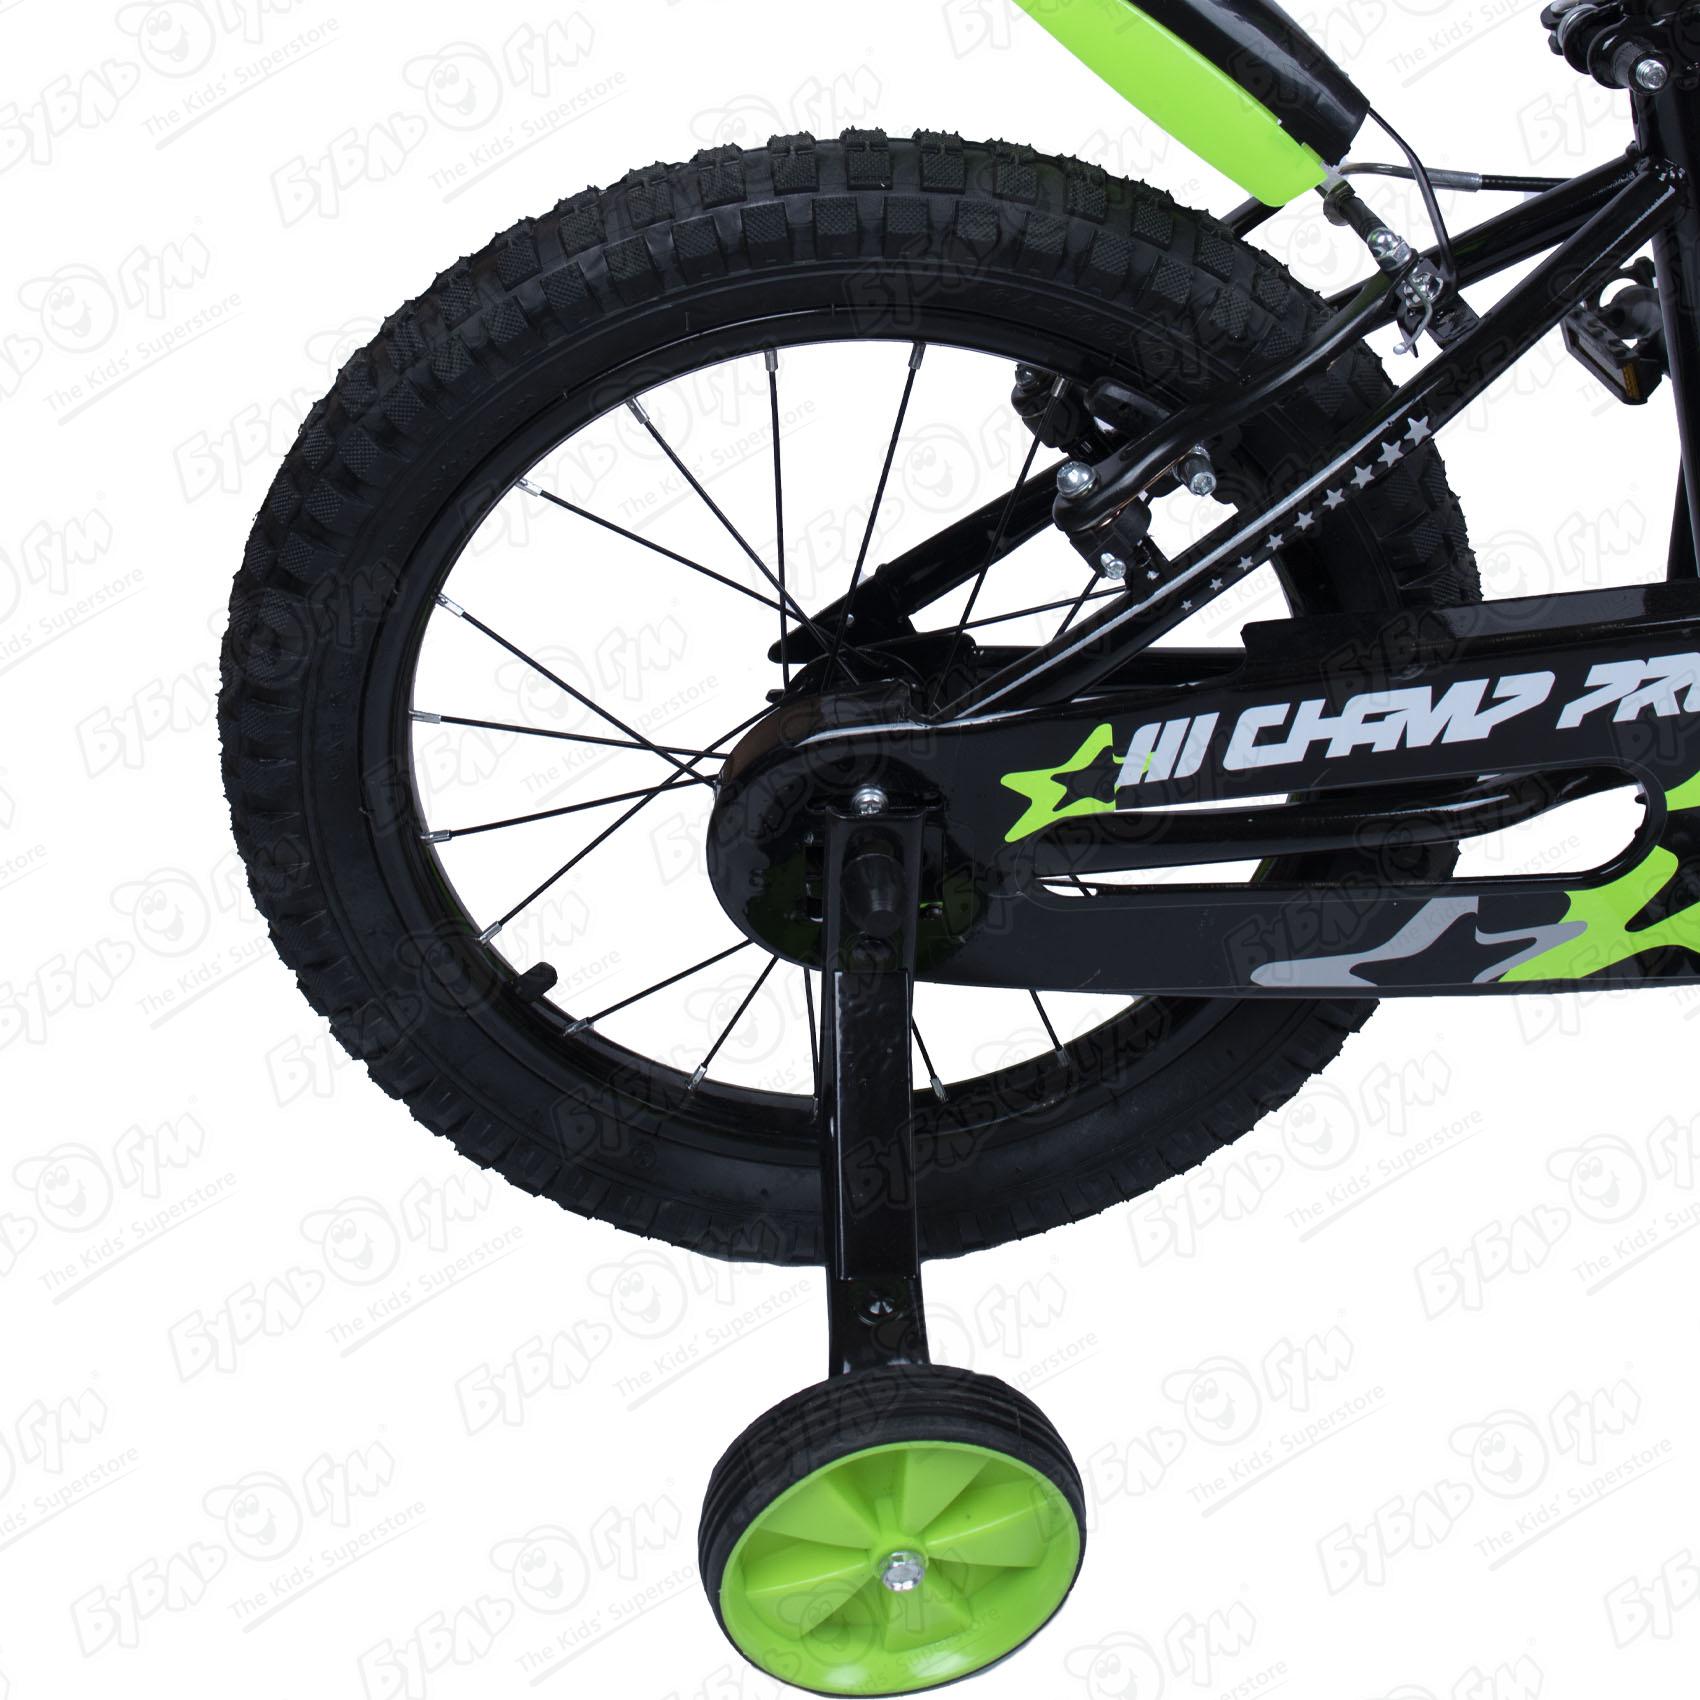 Велосипед Champ Pro детский трехколесный B16 10кг, цвет черный - фото 6